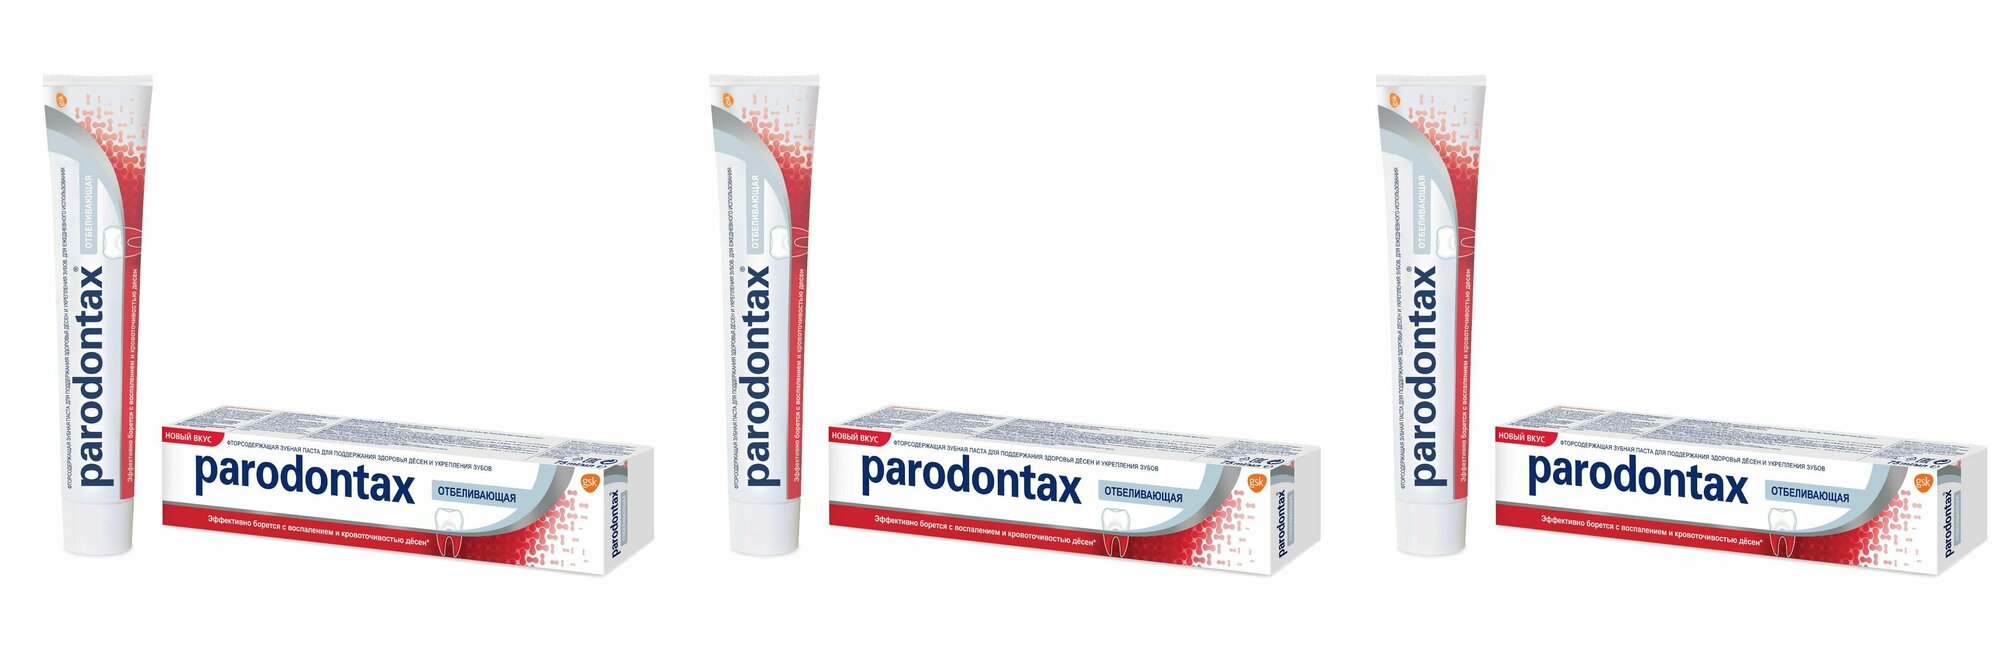 Parodontax Зубная паста Бережное отбеливание, 75 мл, 3 шт